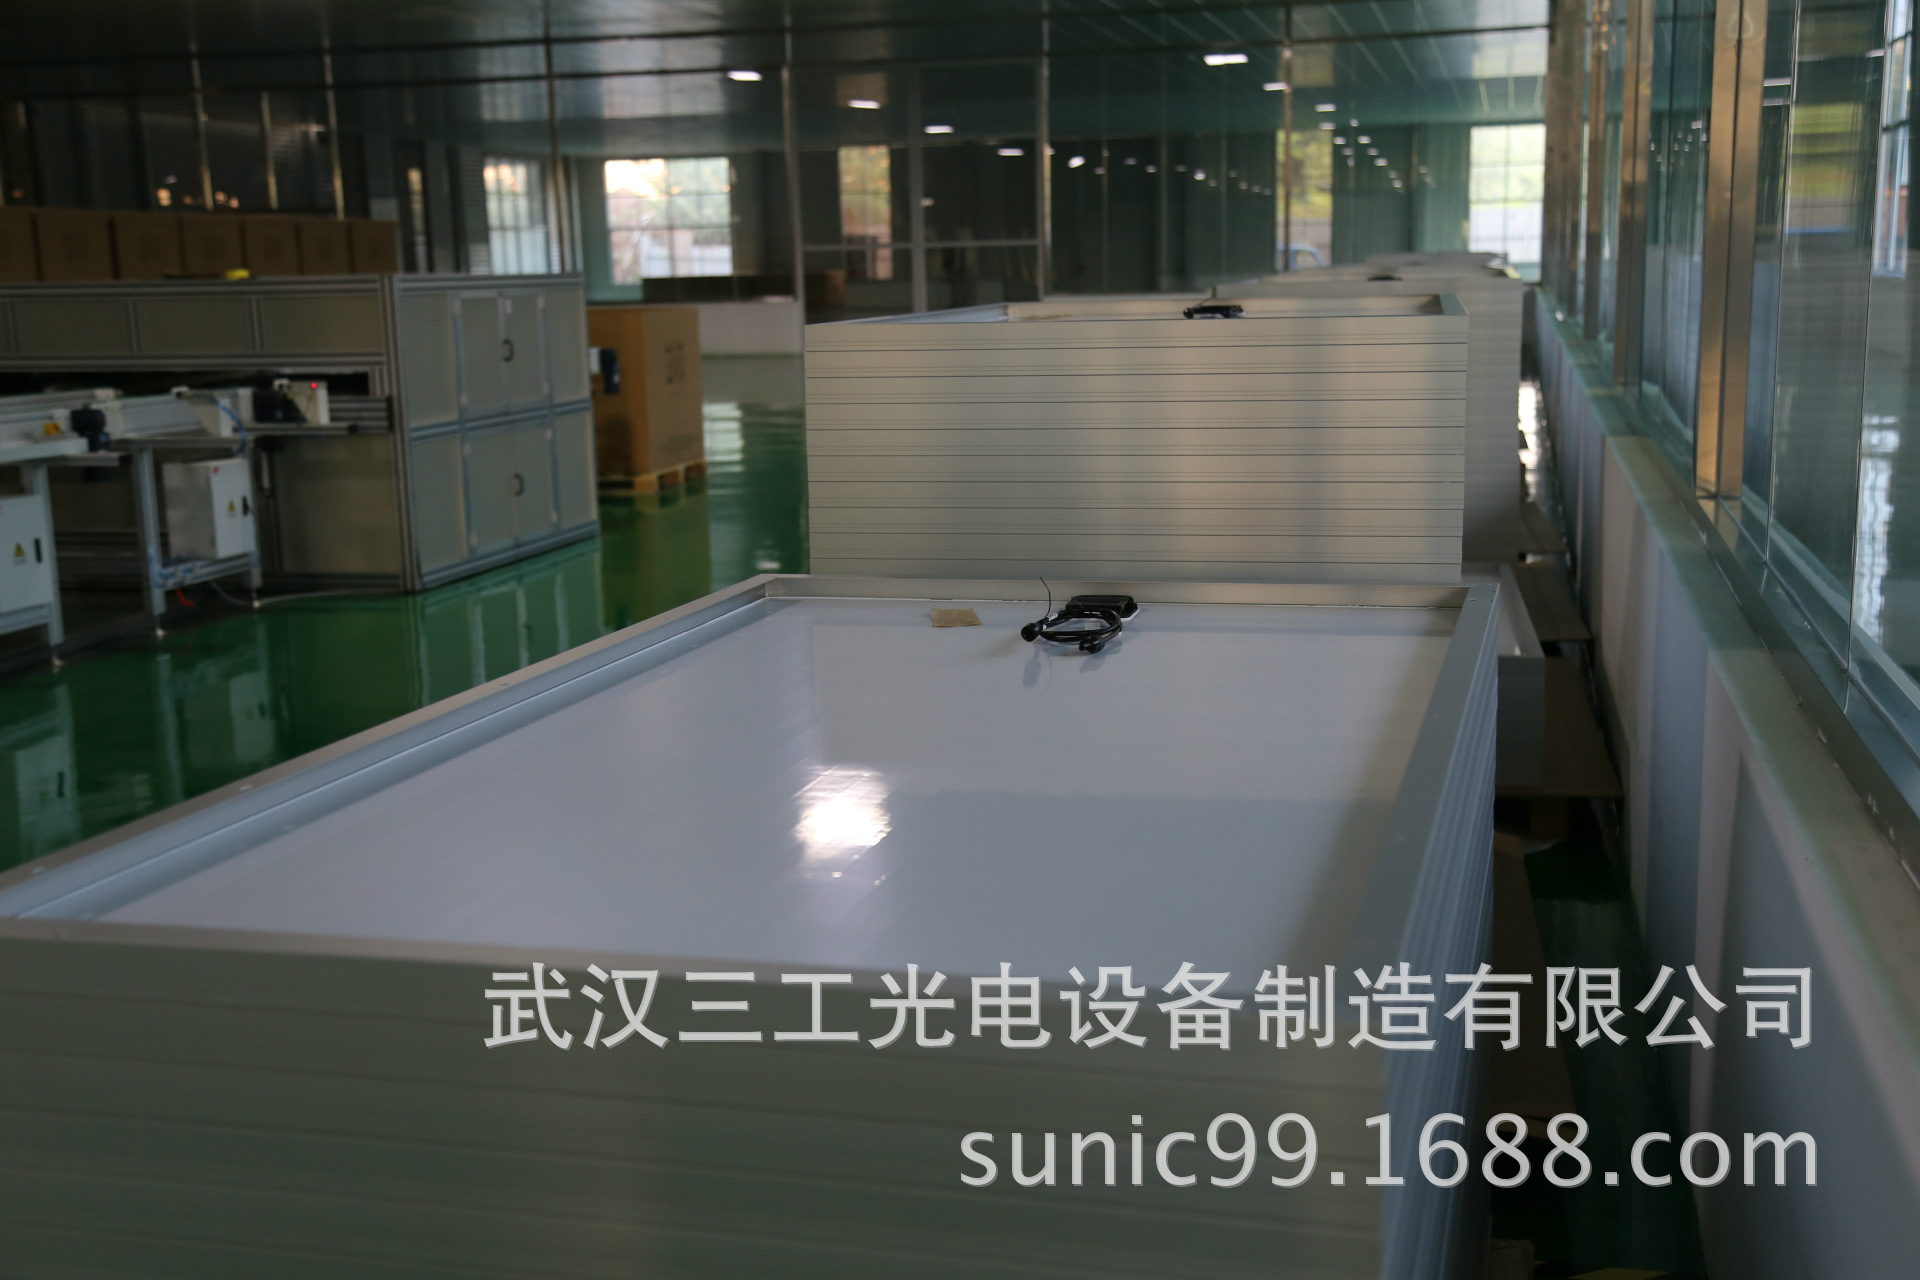 海南省太阳能路灯电池板生产设备|自动化光伏组件生产线示例图11